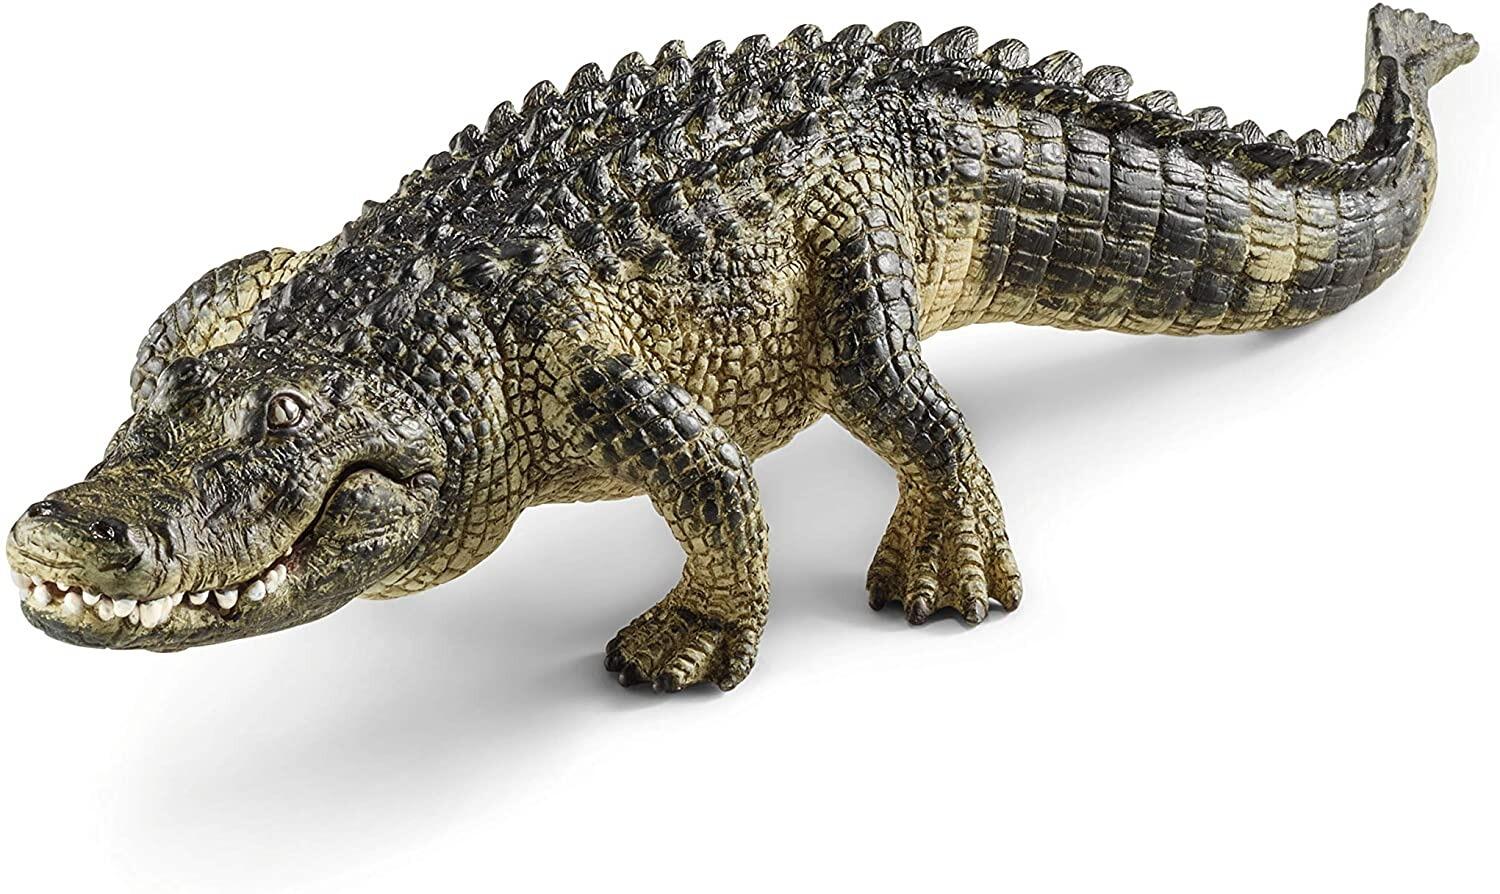 Schleich Alligator Figurine - Wild Life